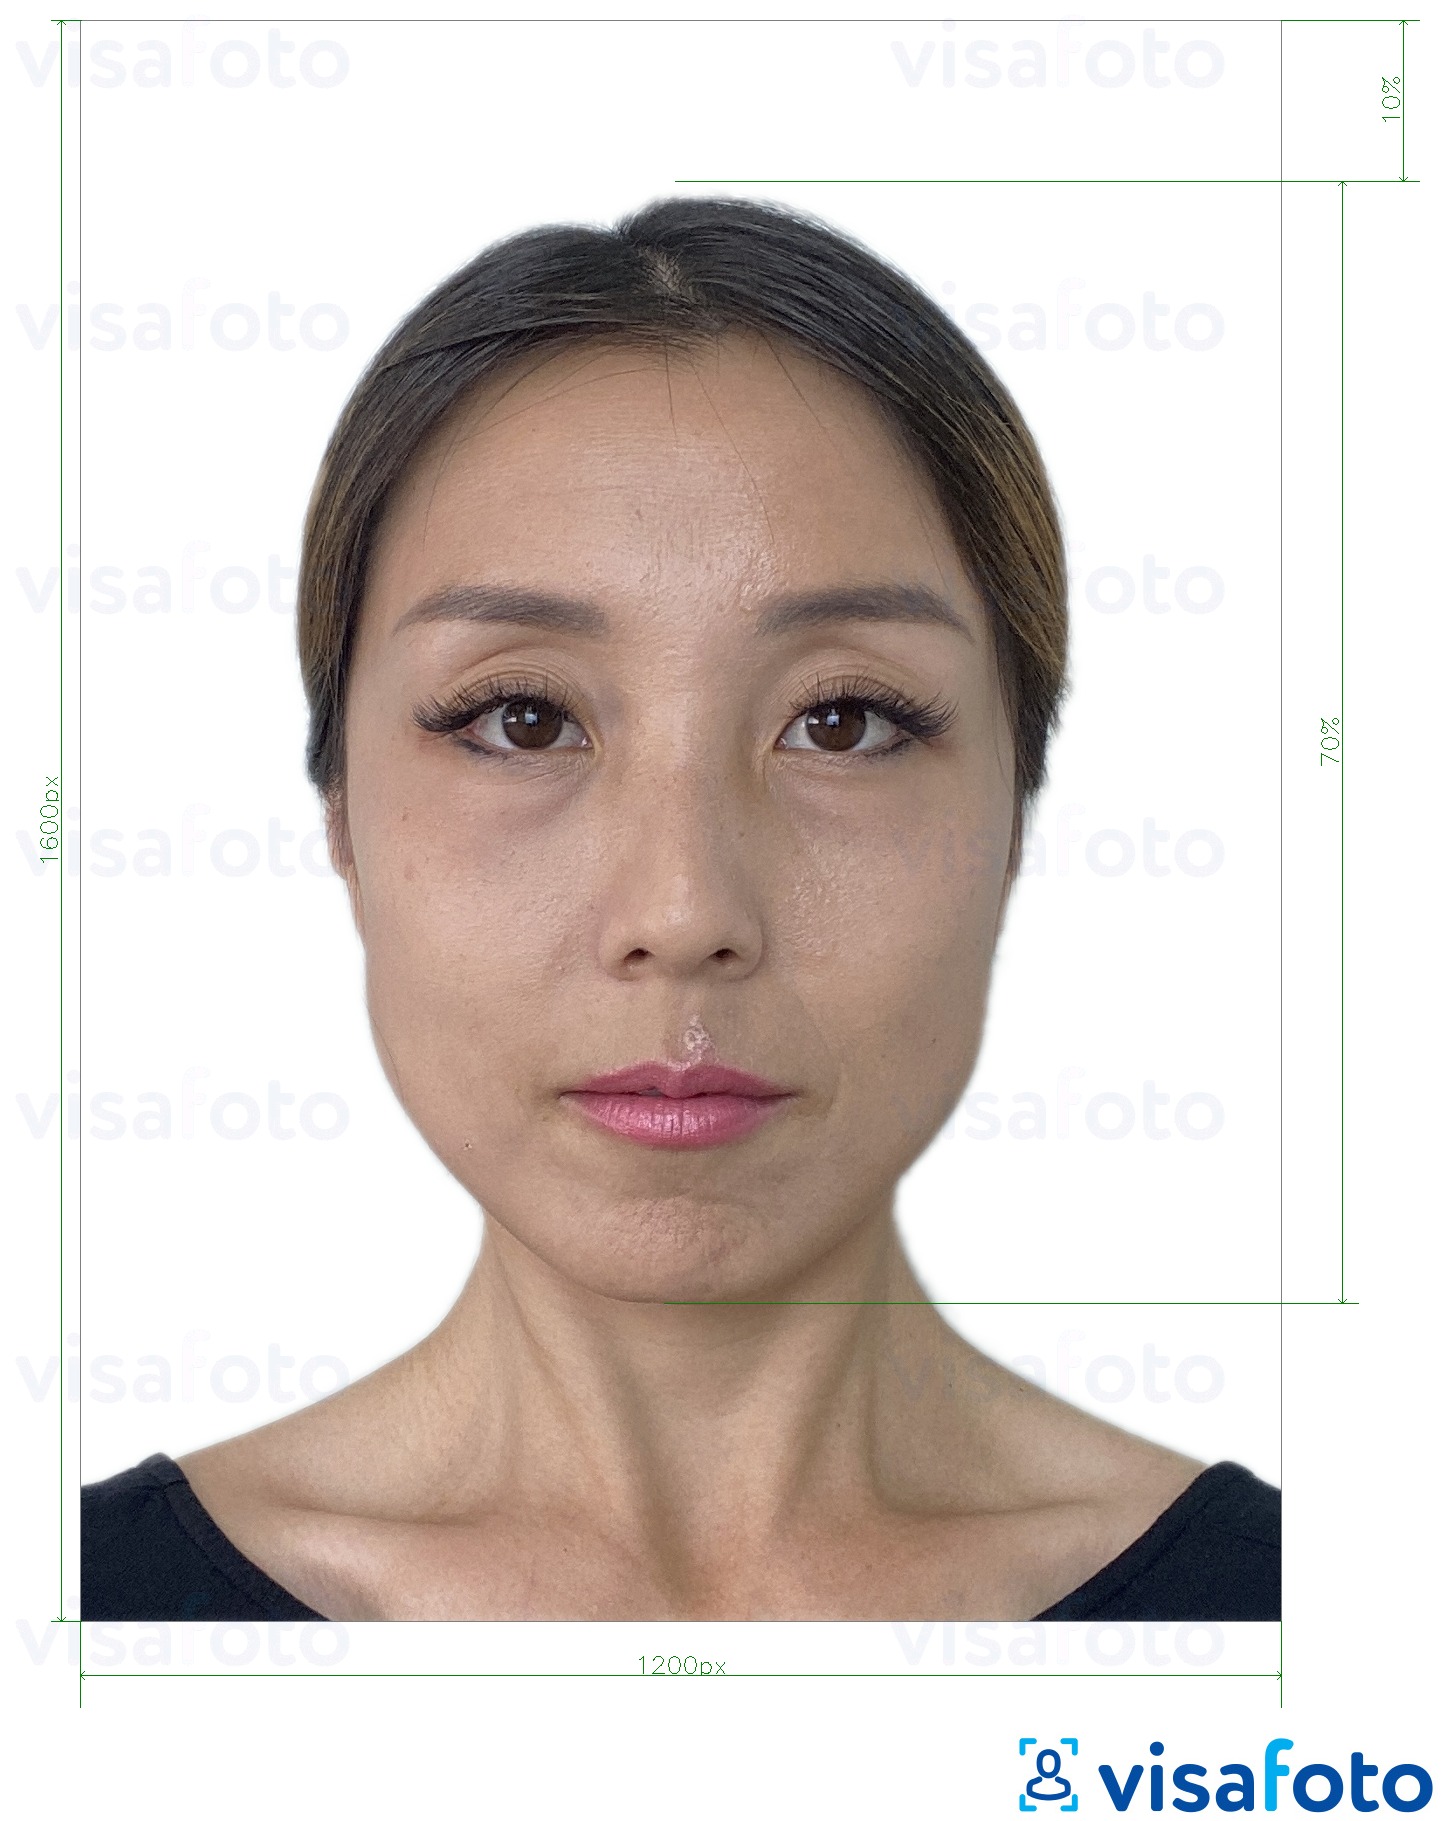 Przykład zdjęcia dla Hongkong online e-visa 1200x1600 pikseli z podaniem dokładnego rozmiaru.